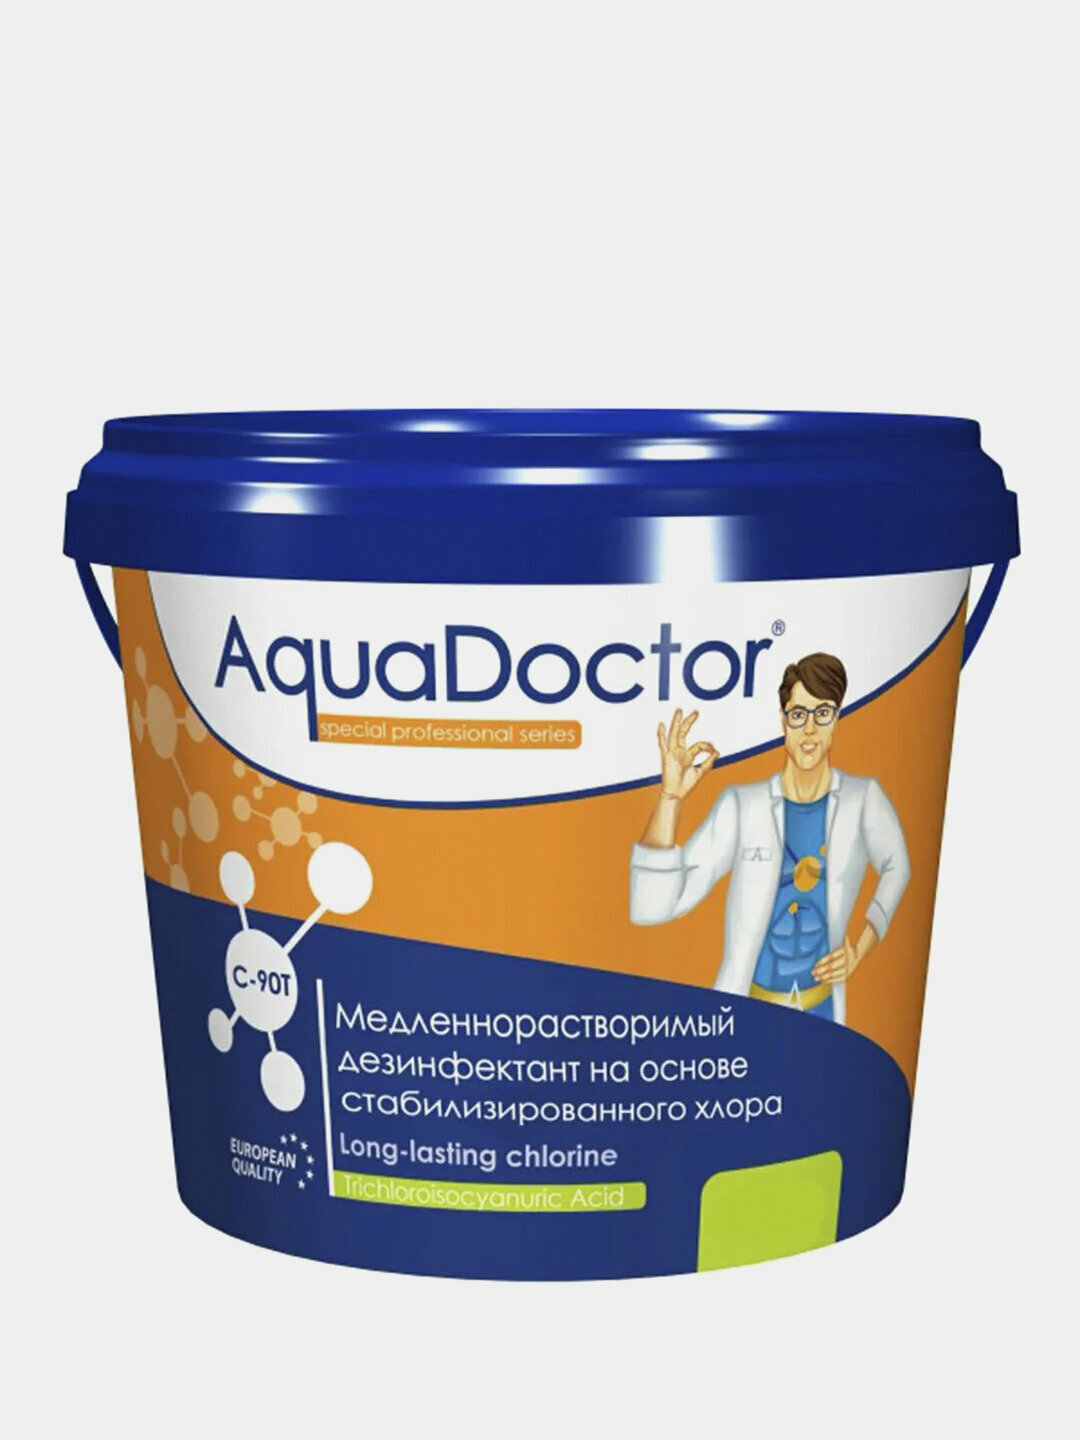 Хлор Медленнорастворимый дезинфектант AquaDoctor C-90-T 1 кг